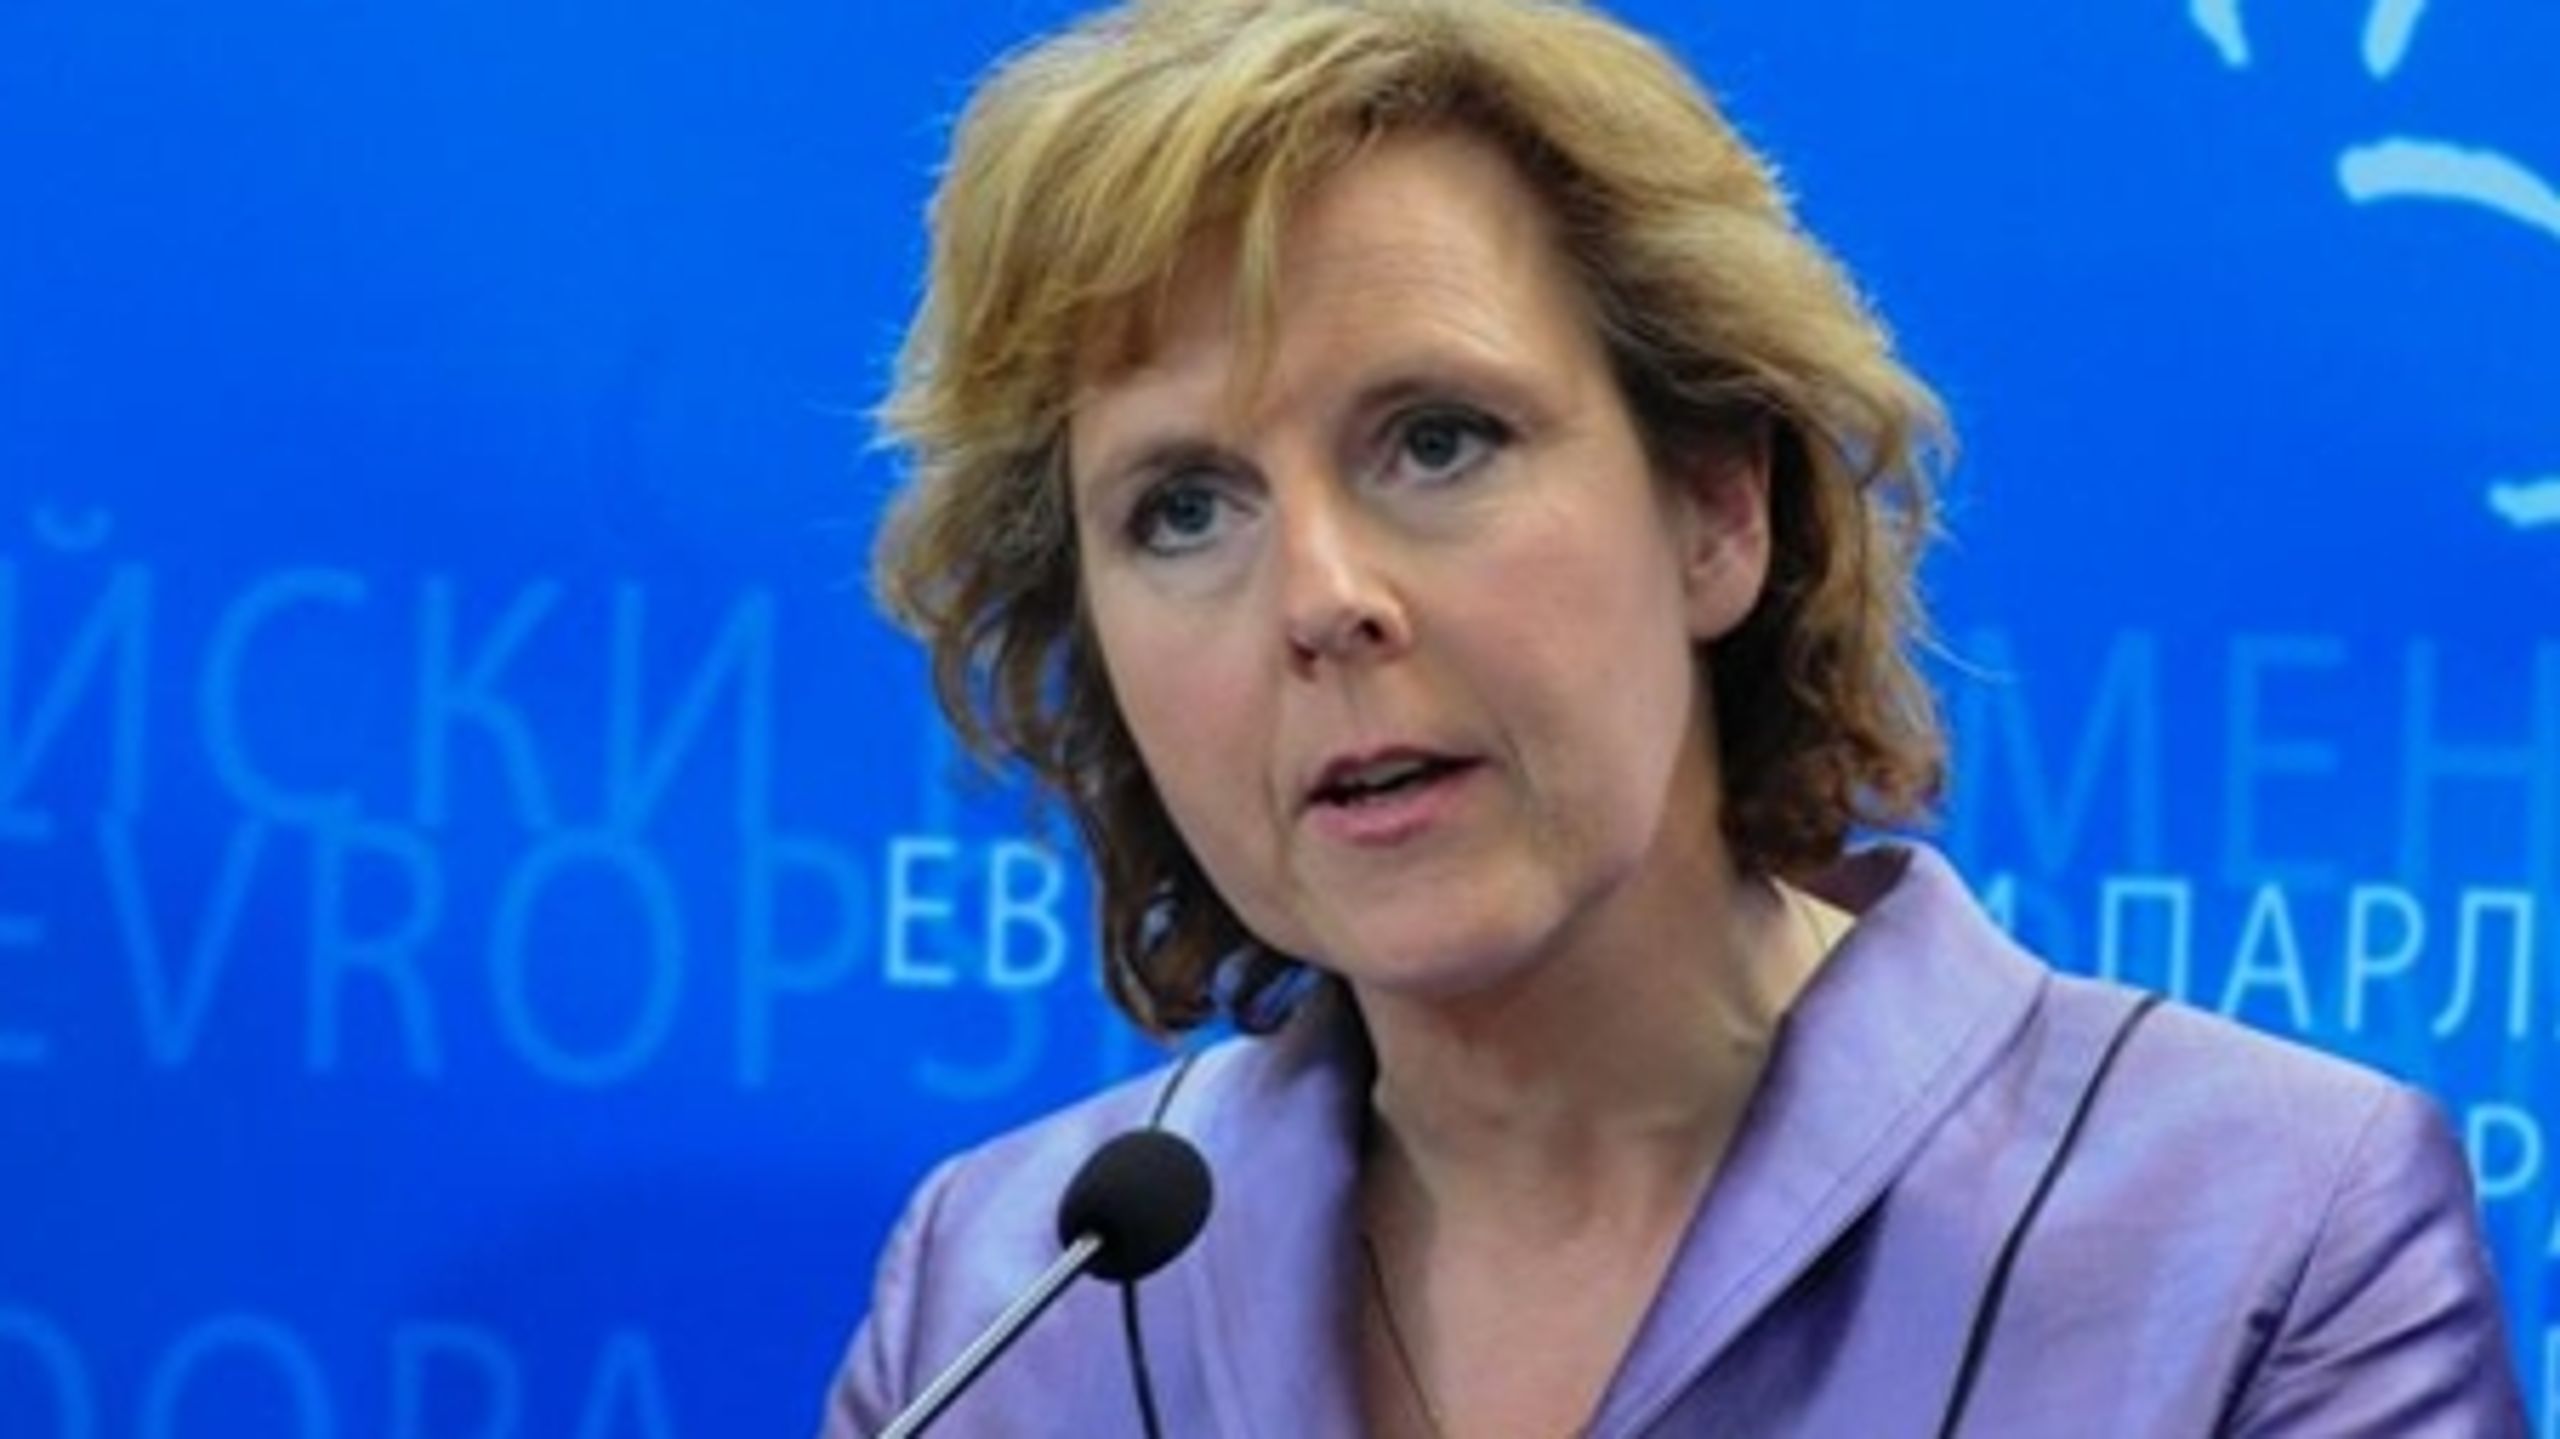 Det bliver svært for klimakommissær Connie Hedegaard at få sin kommende klimaplan igennem i parlamentet, lyder vurderingen fra to parlamentarikere.